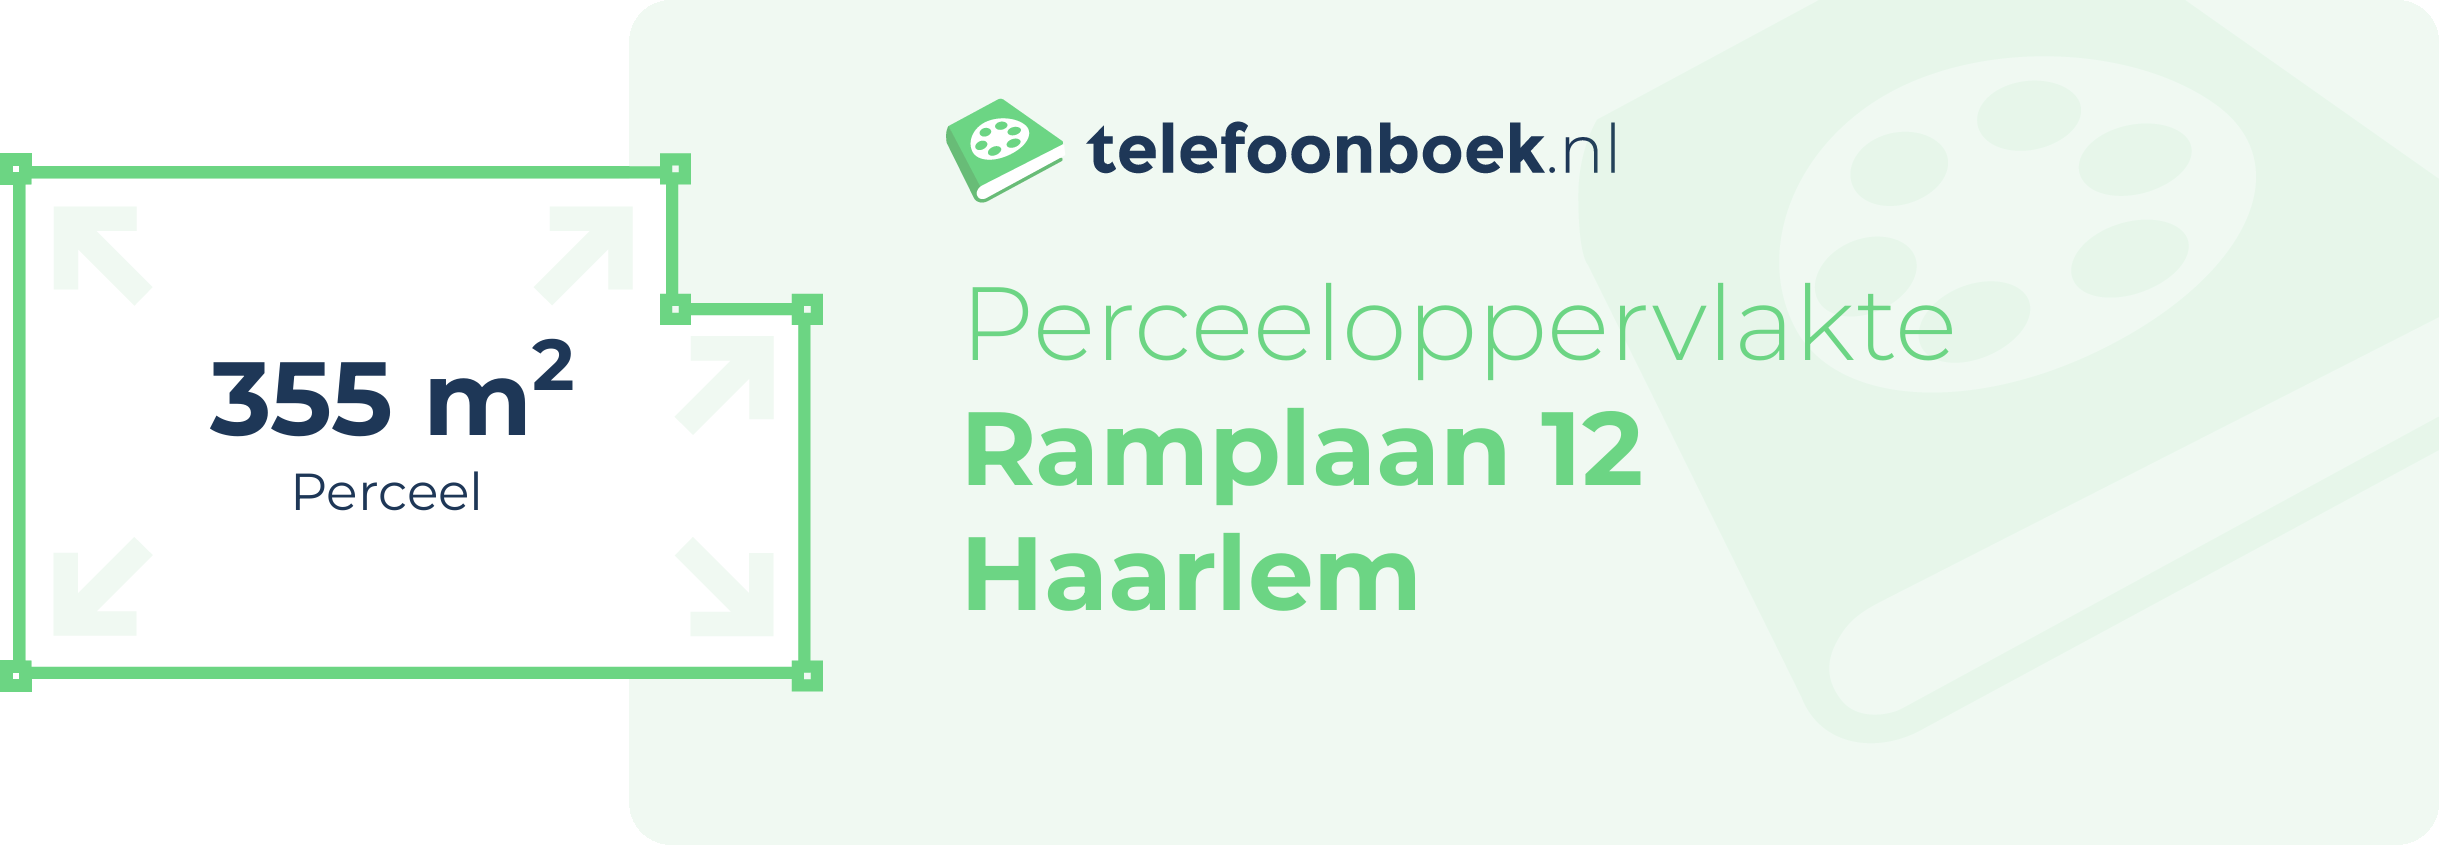 Perceeloppervlakte Ramplaan 12 Haarlem